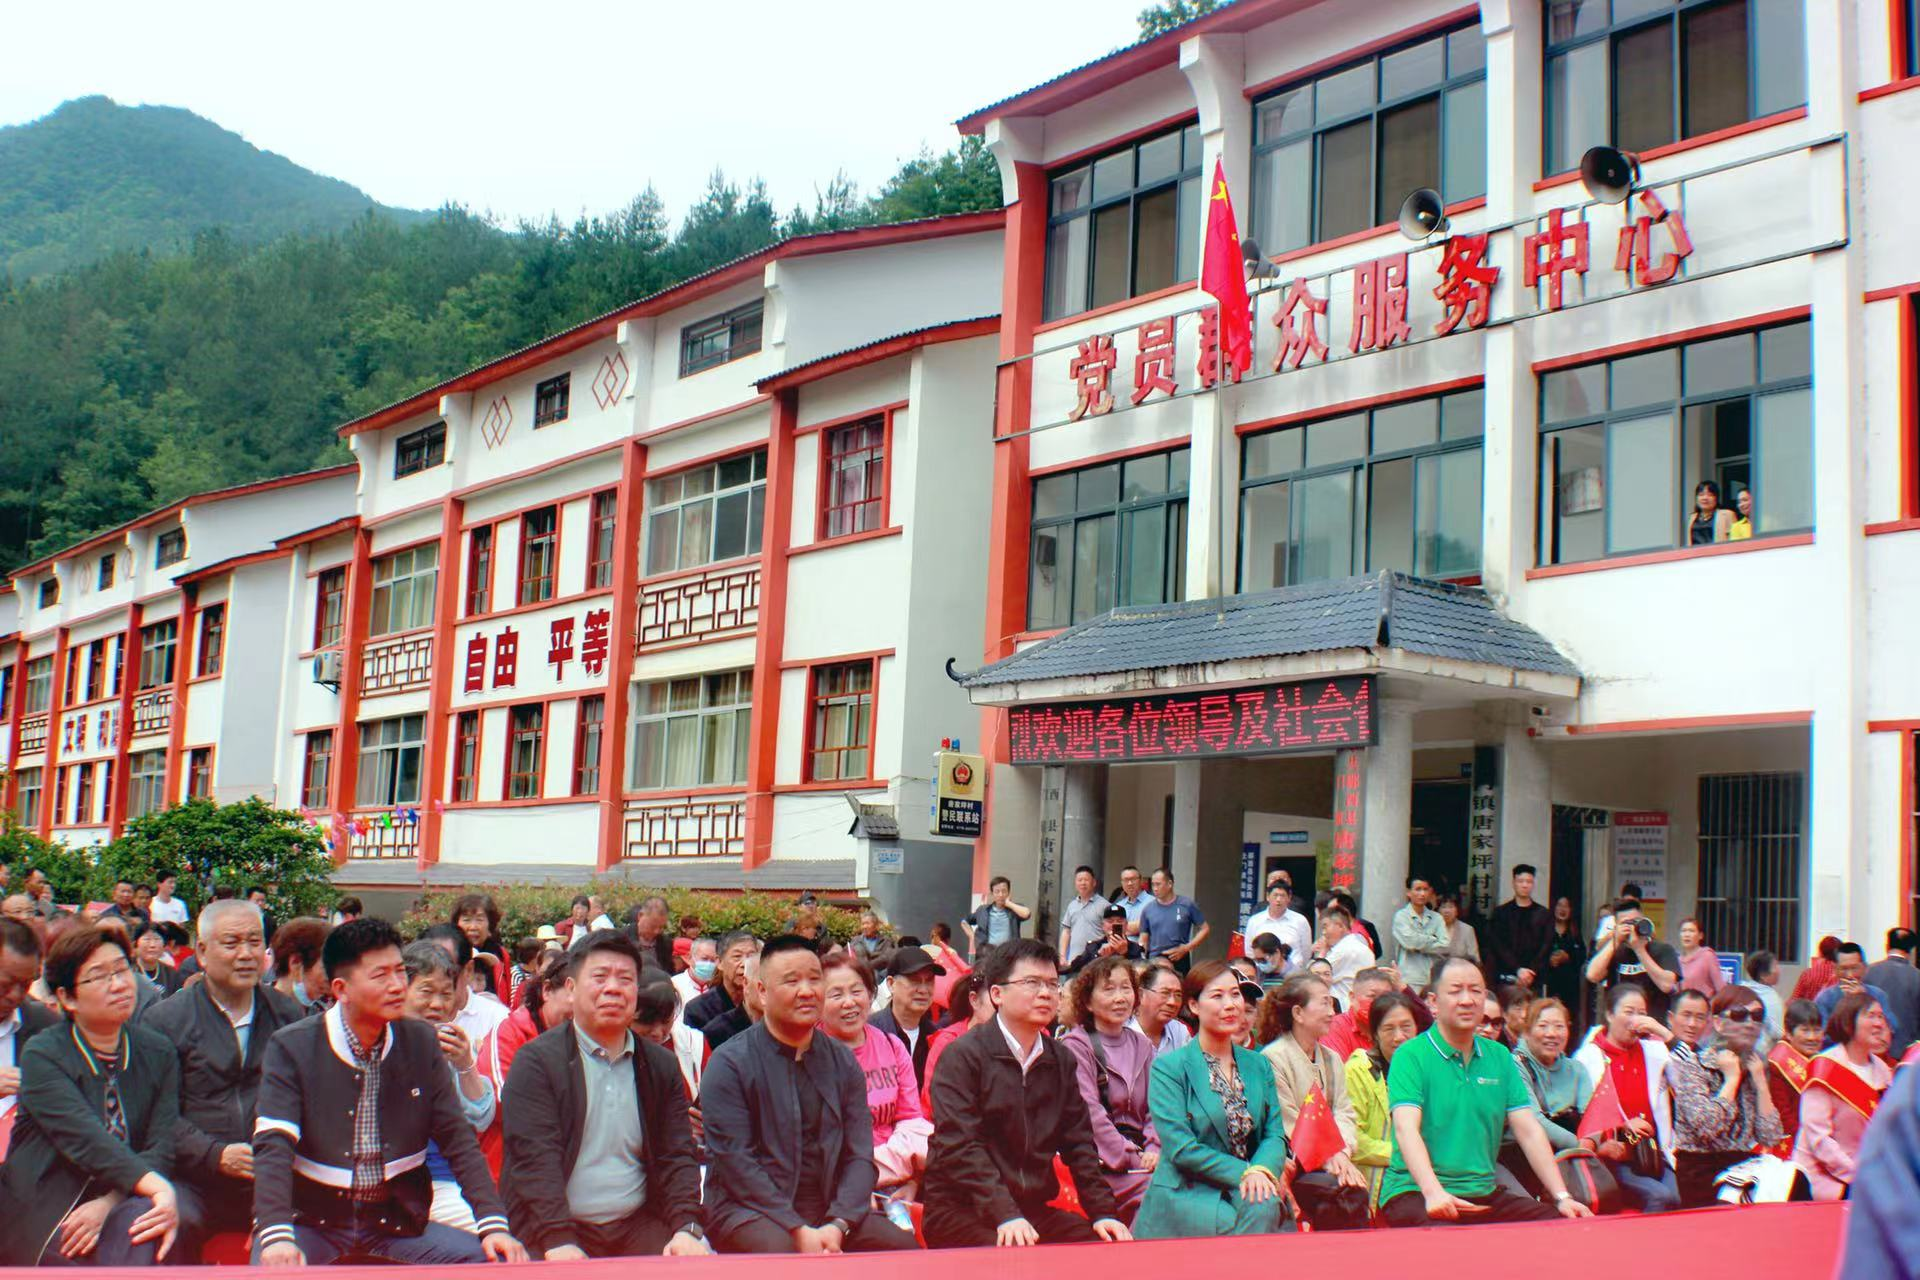 5月25日,中国人寿郧西县支公司在郧西县土门镇唐家坪村进行了游荷